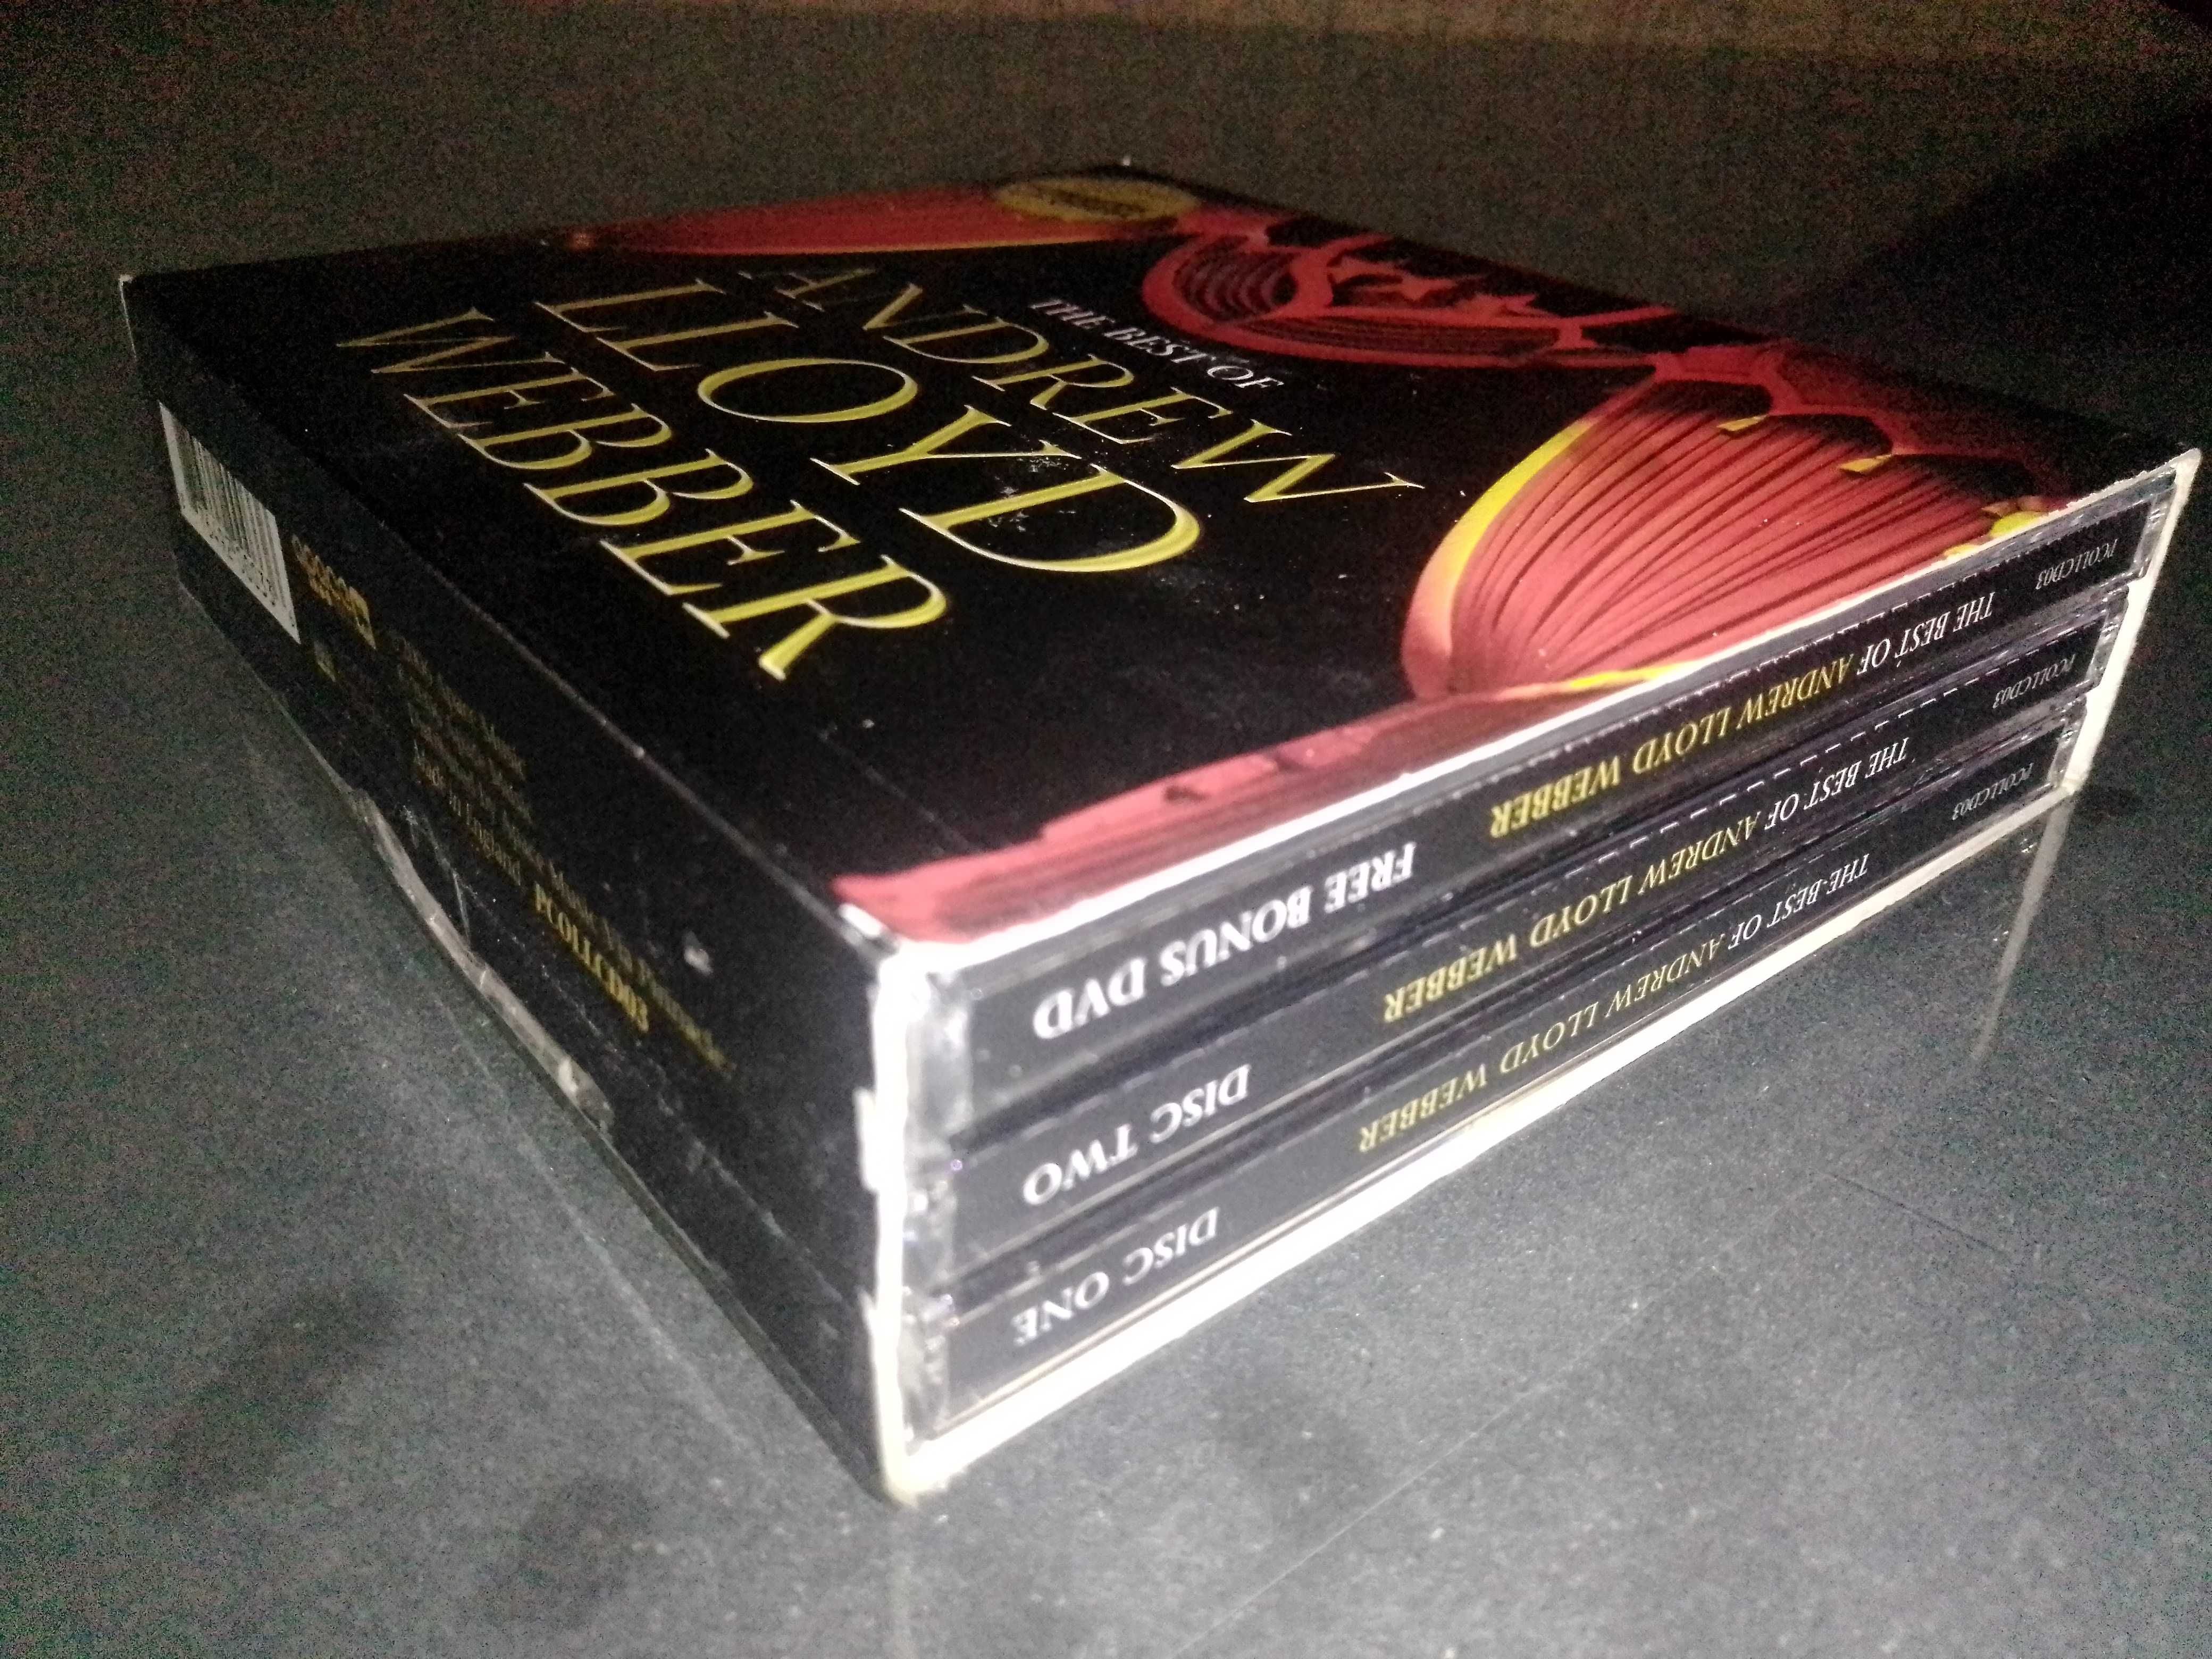 The best of Andrew Lloyd Webber
2 cd's e 1 dvd